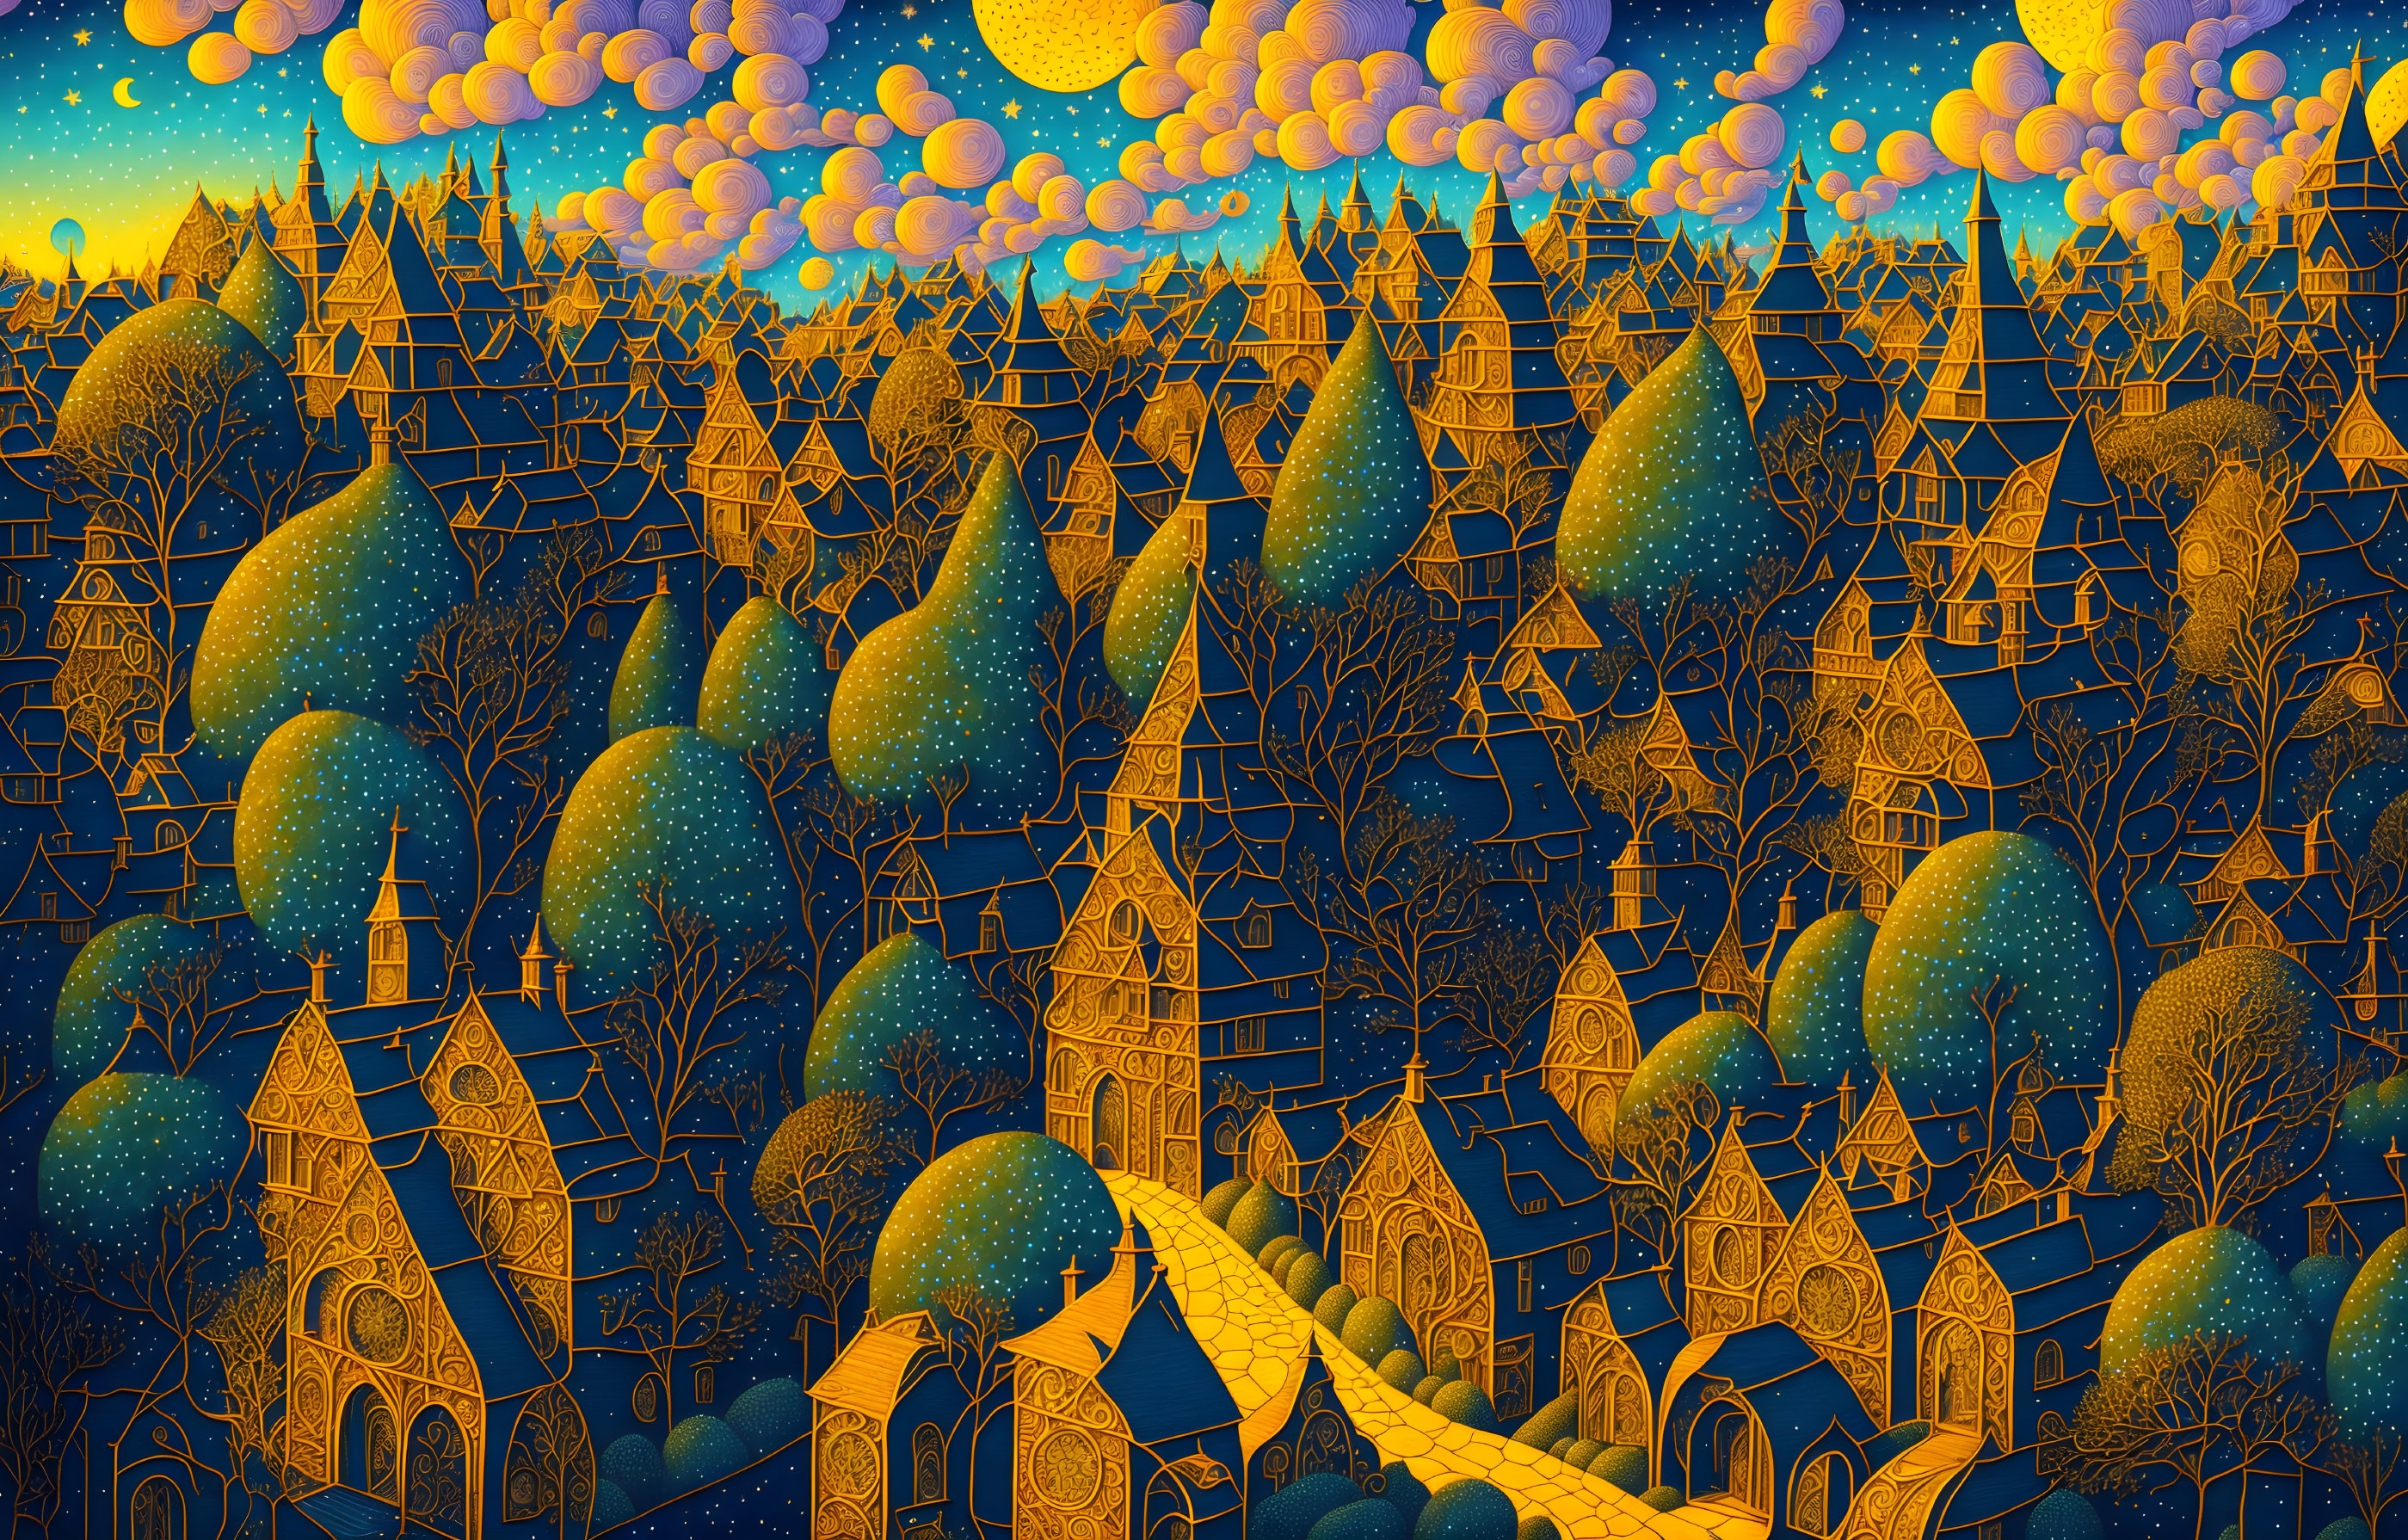 Whimsical artwork of fantastical village under starry sky